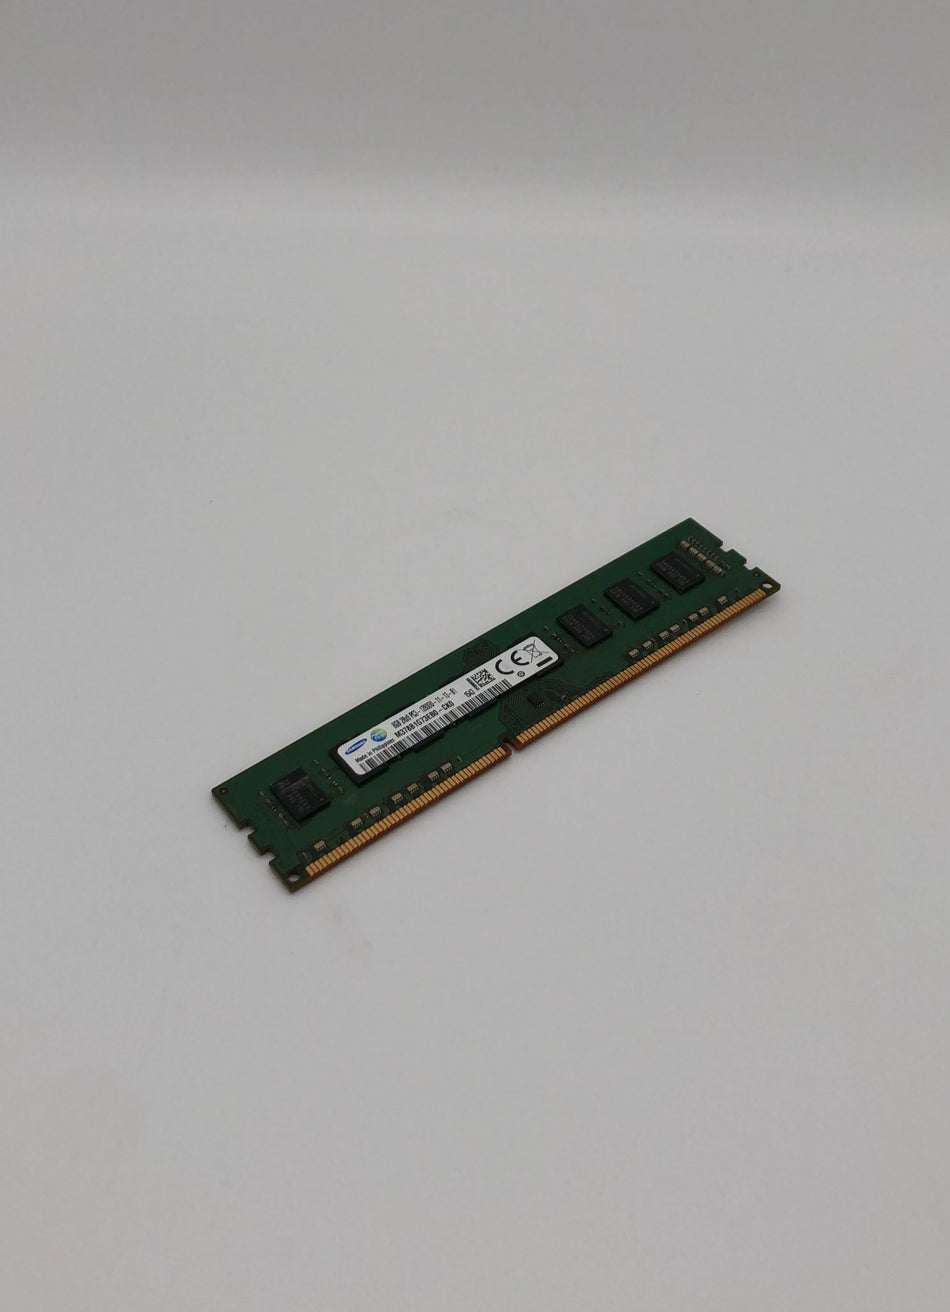 8GB DDR3 UDIMM RAM - Samsung M378B1G73EB0-CK0 - DDR3 1600 MHz - PC3-12800U